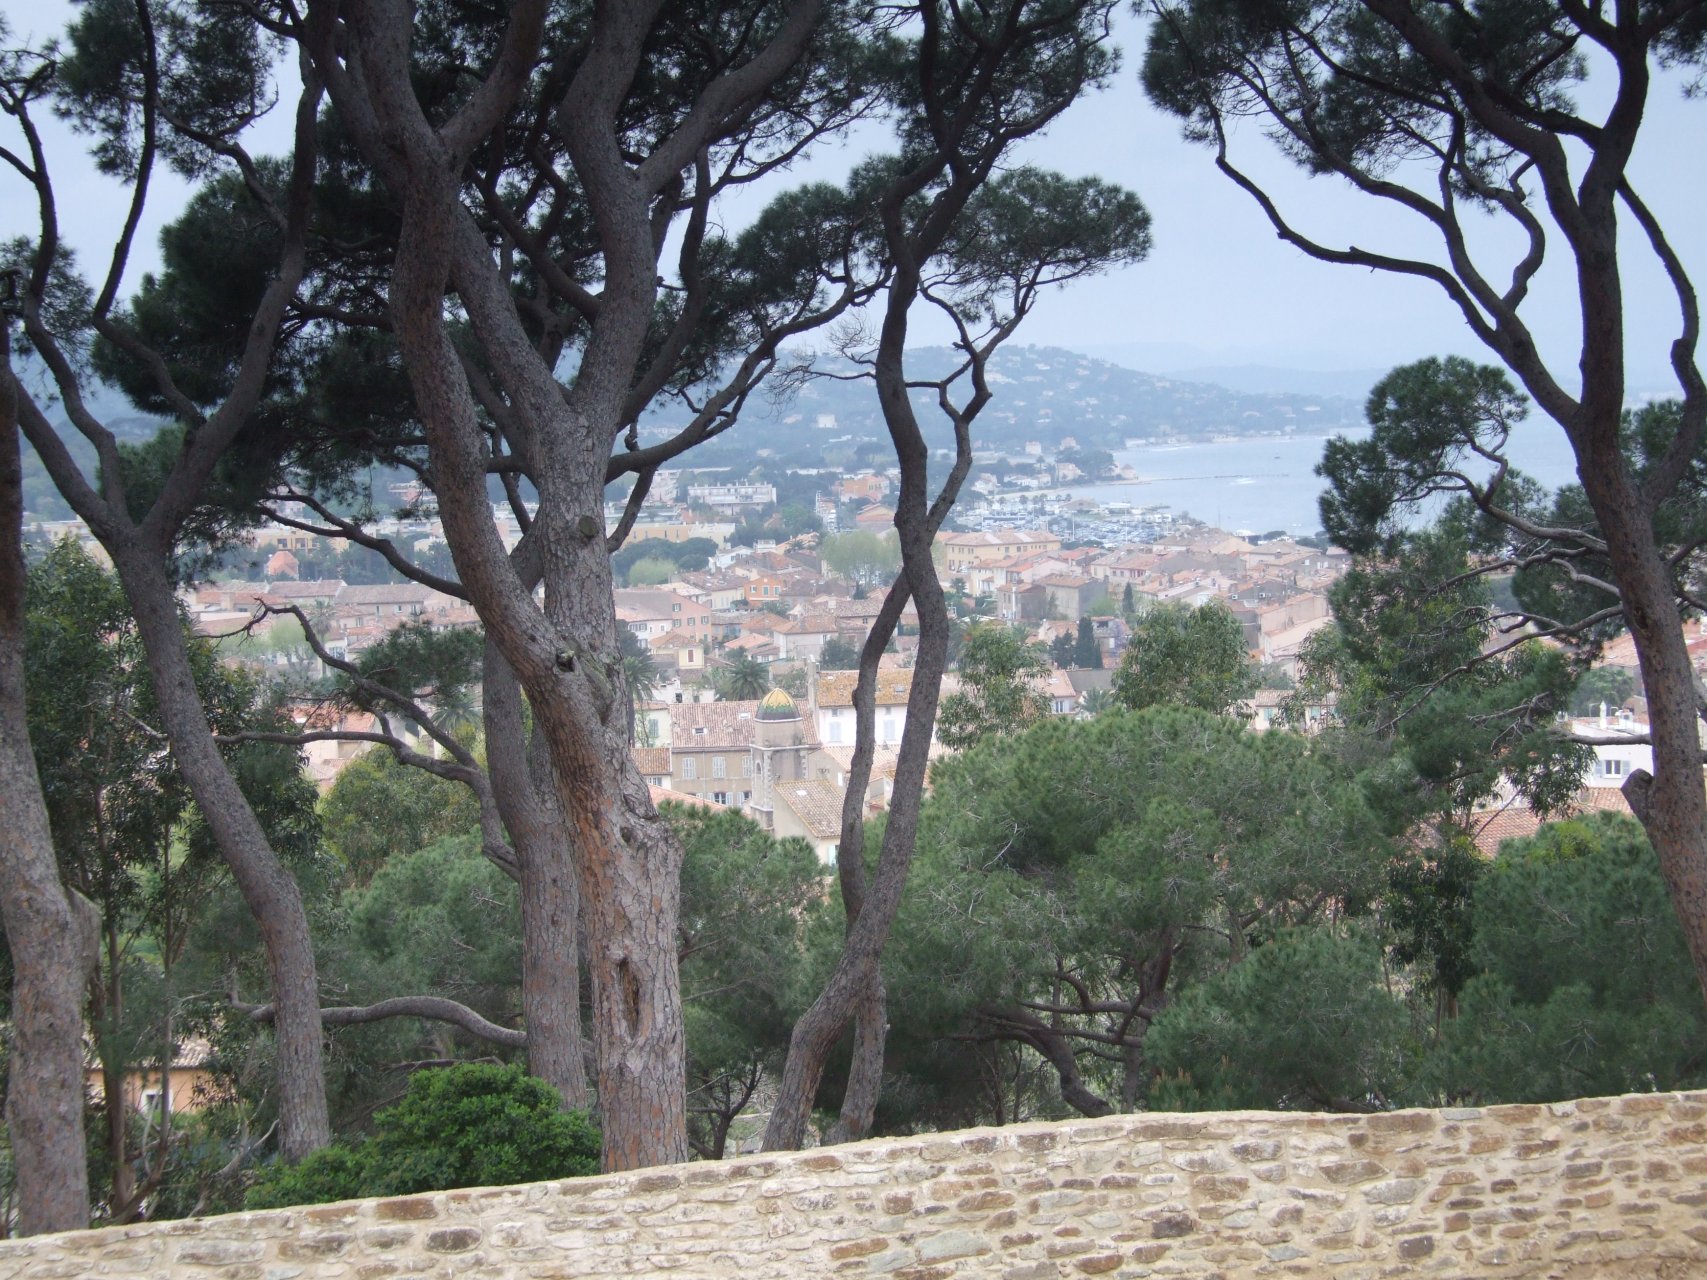 Saint-Tropez widziane cytadeli